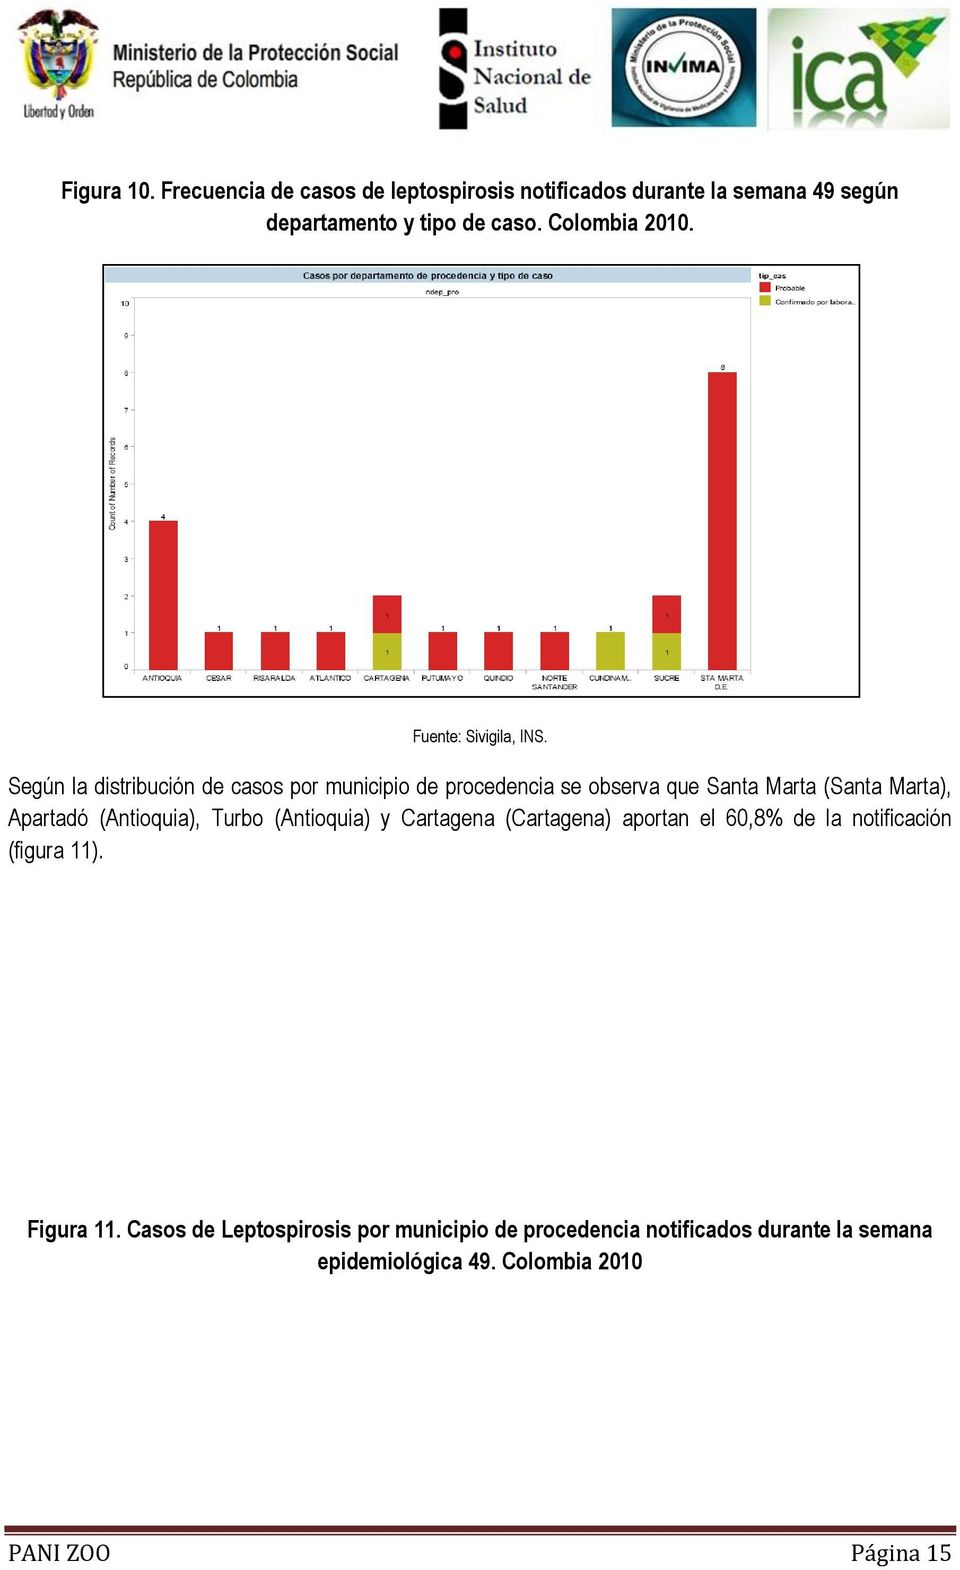 Según la distribución de casos por municipio de procedencia se observa que Santa Marta (Santa Marta), Apartadó (Antioquia),